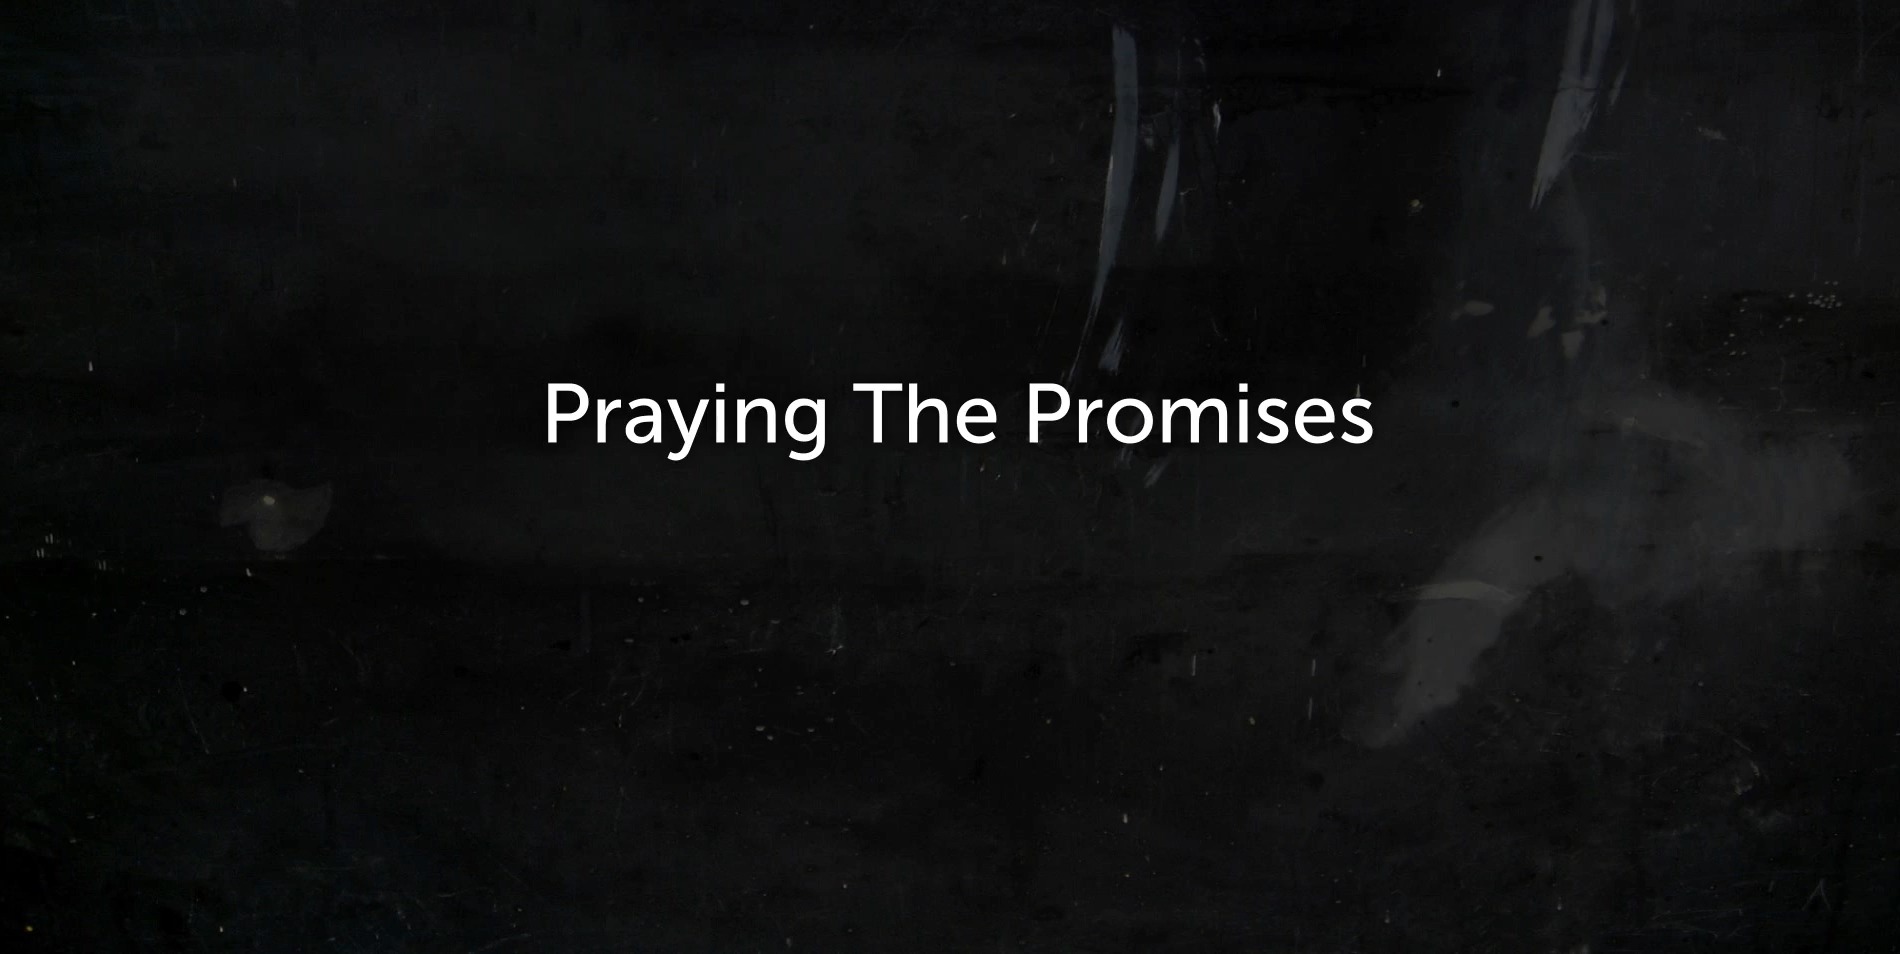 Praying promises